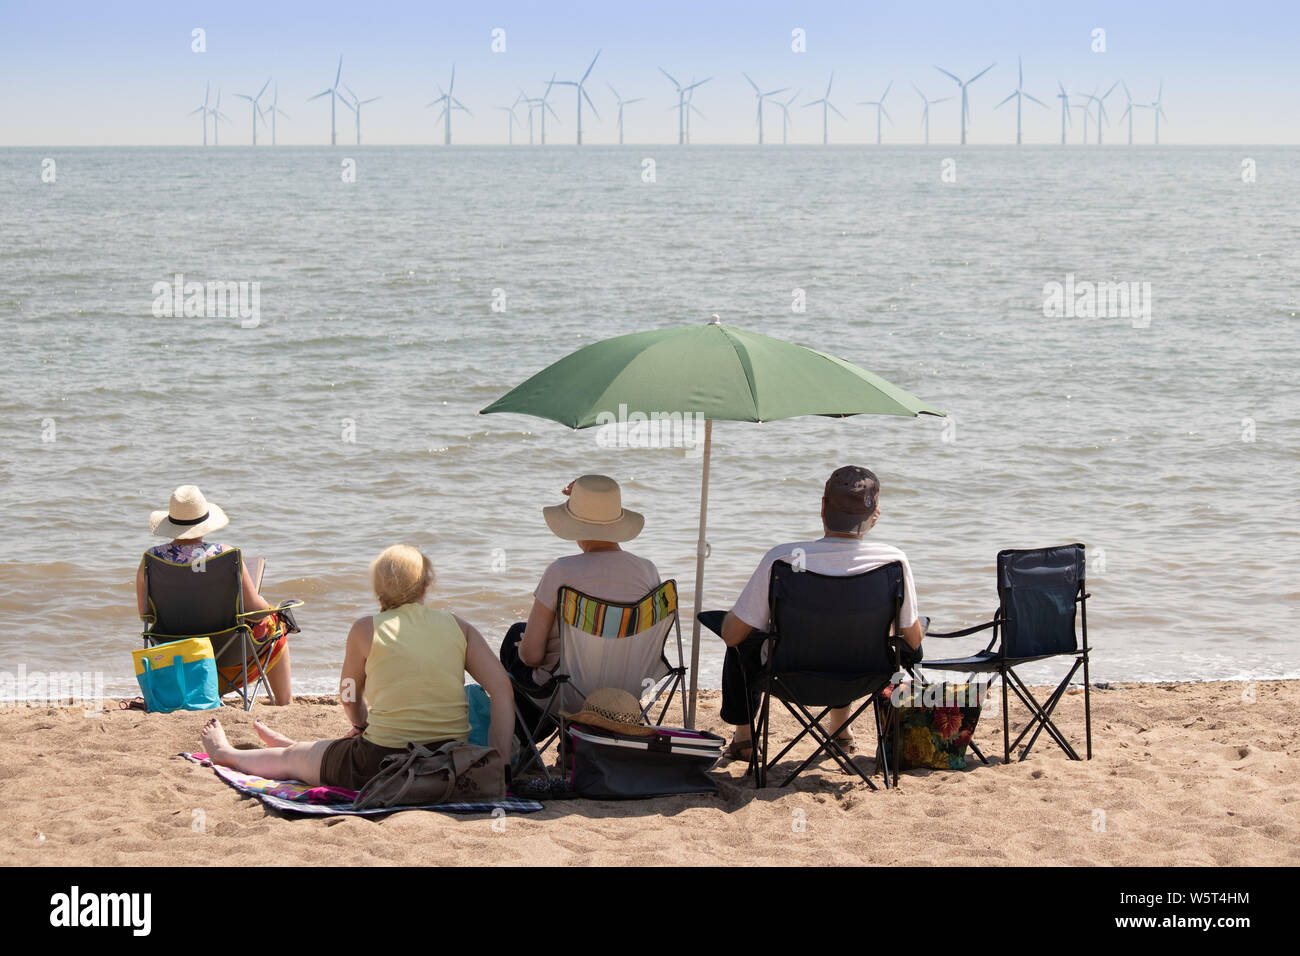 Tempo caldo a Skegness. La gente sulla spiaggia a guardare il turbine eoliche off shore Foto Stock